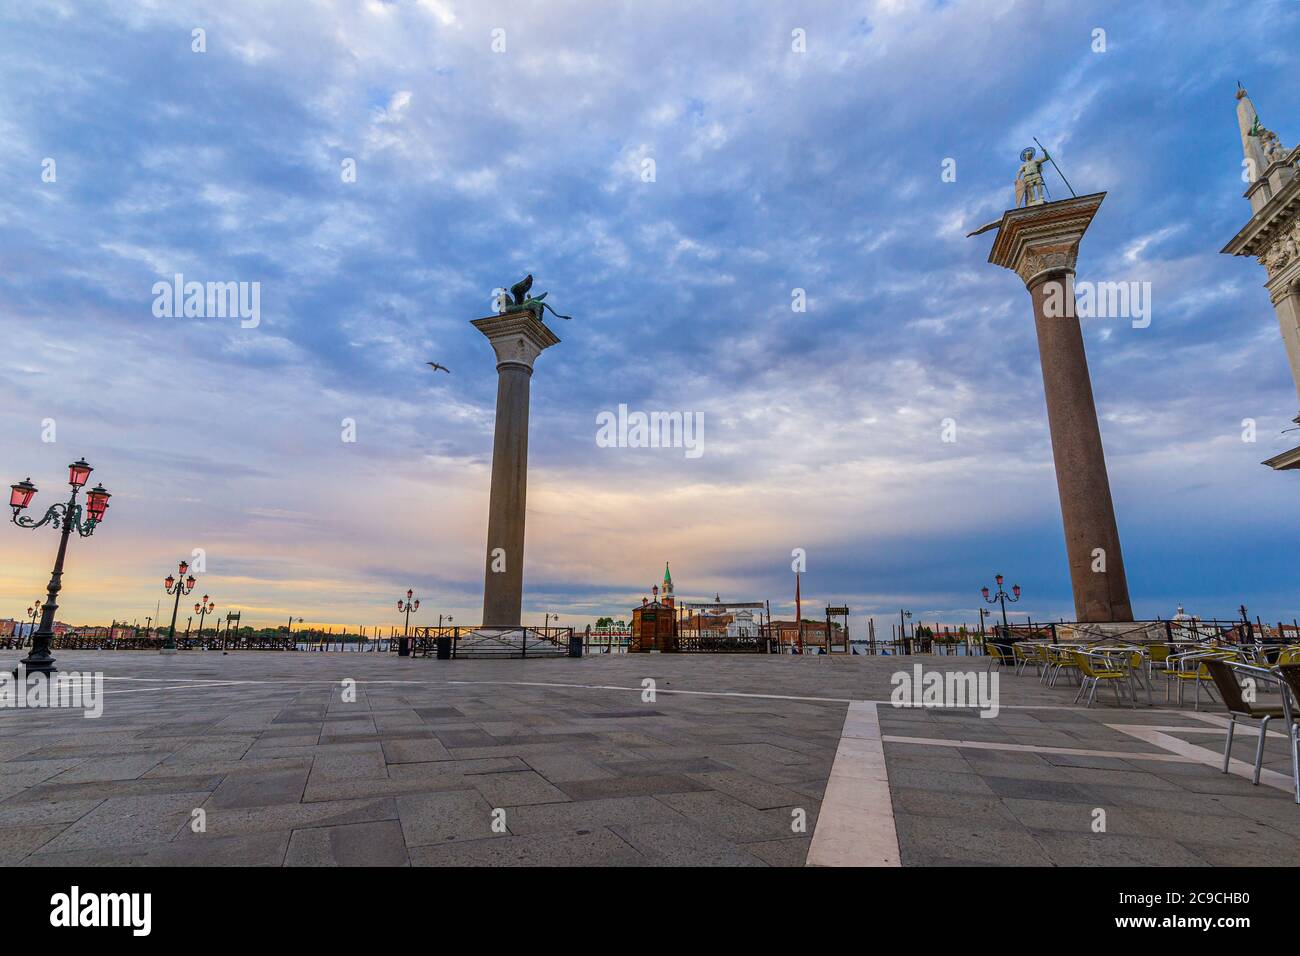 Schöne Aussicht auf die Markussäule auf dem Markusplatz in Venedig, Italien Stockfoto